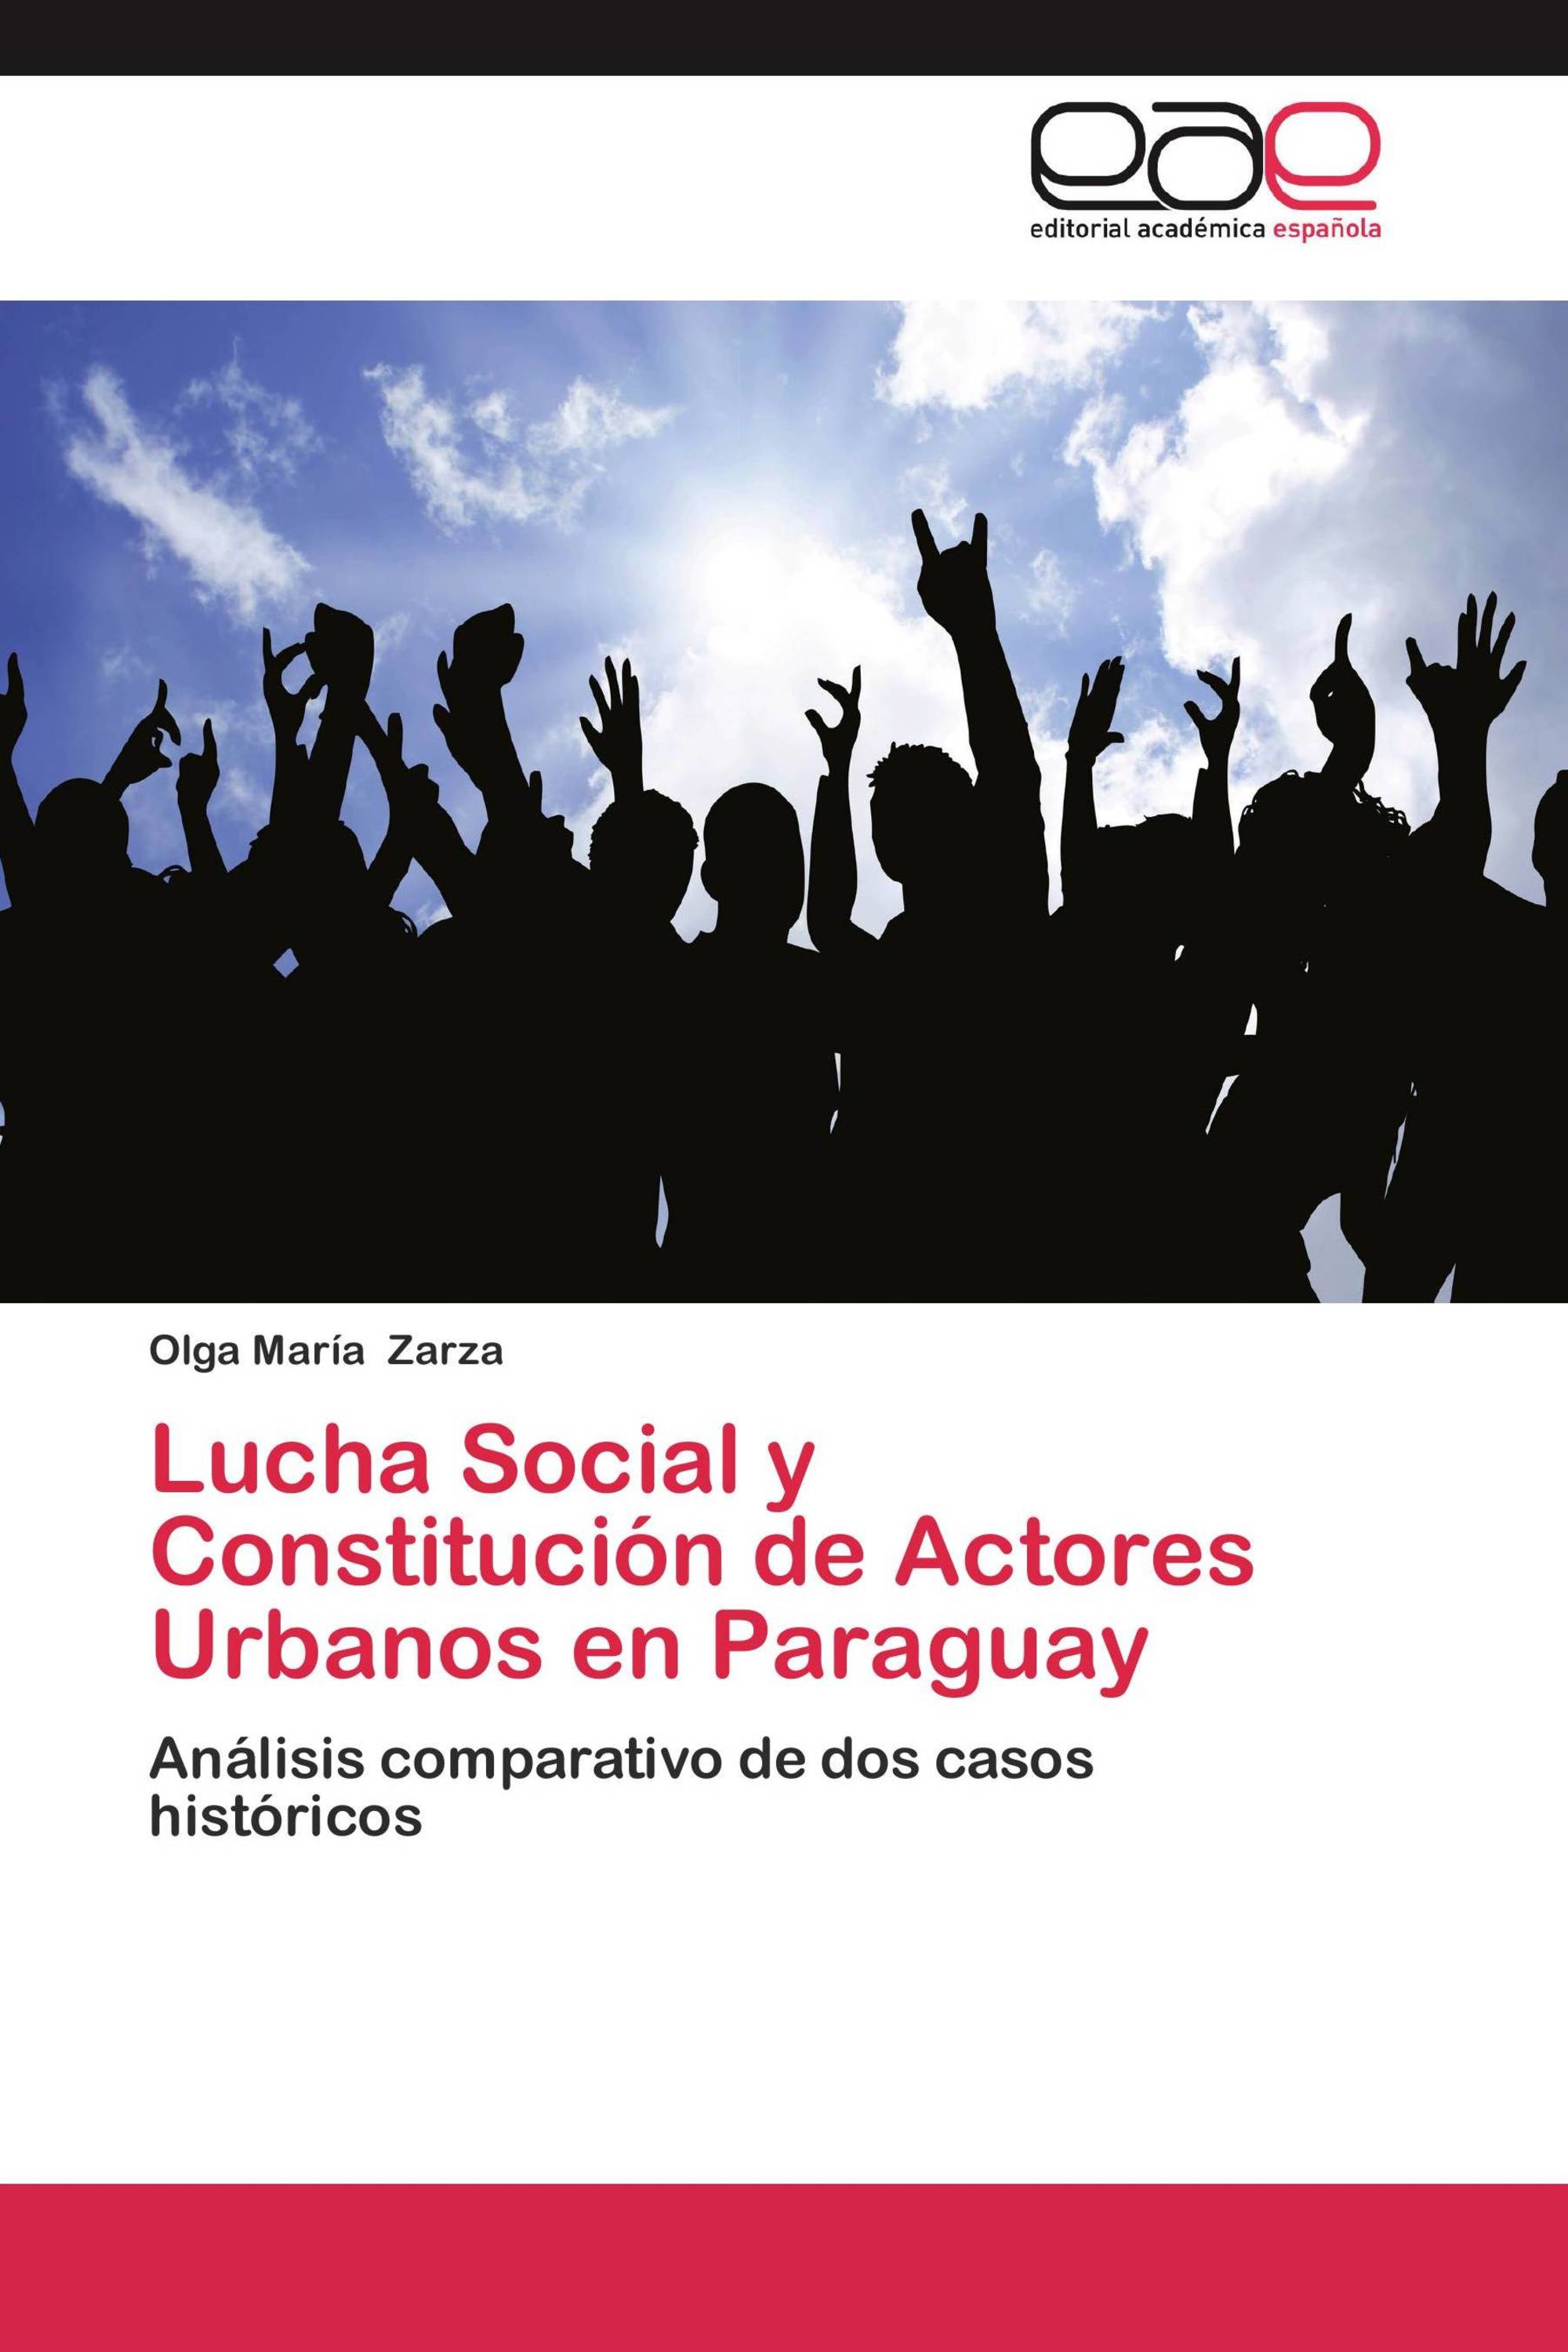 Lucha Social y Constitución de Actores Urbanos en Paraguay